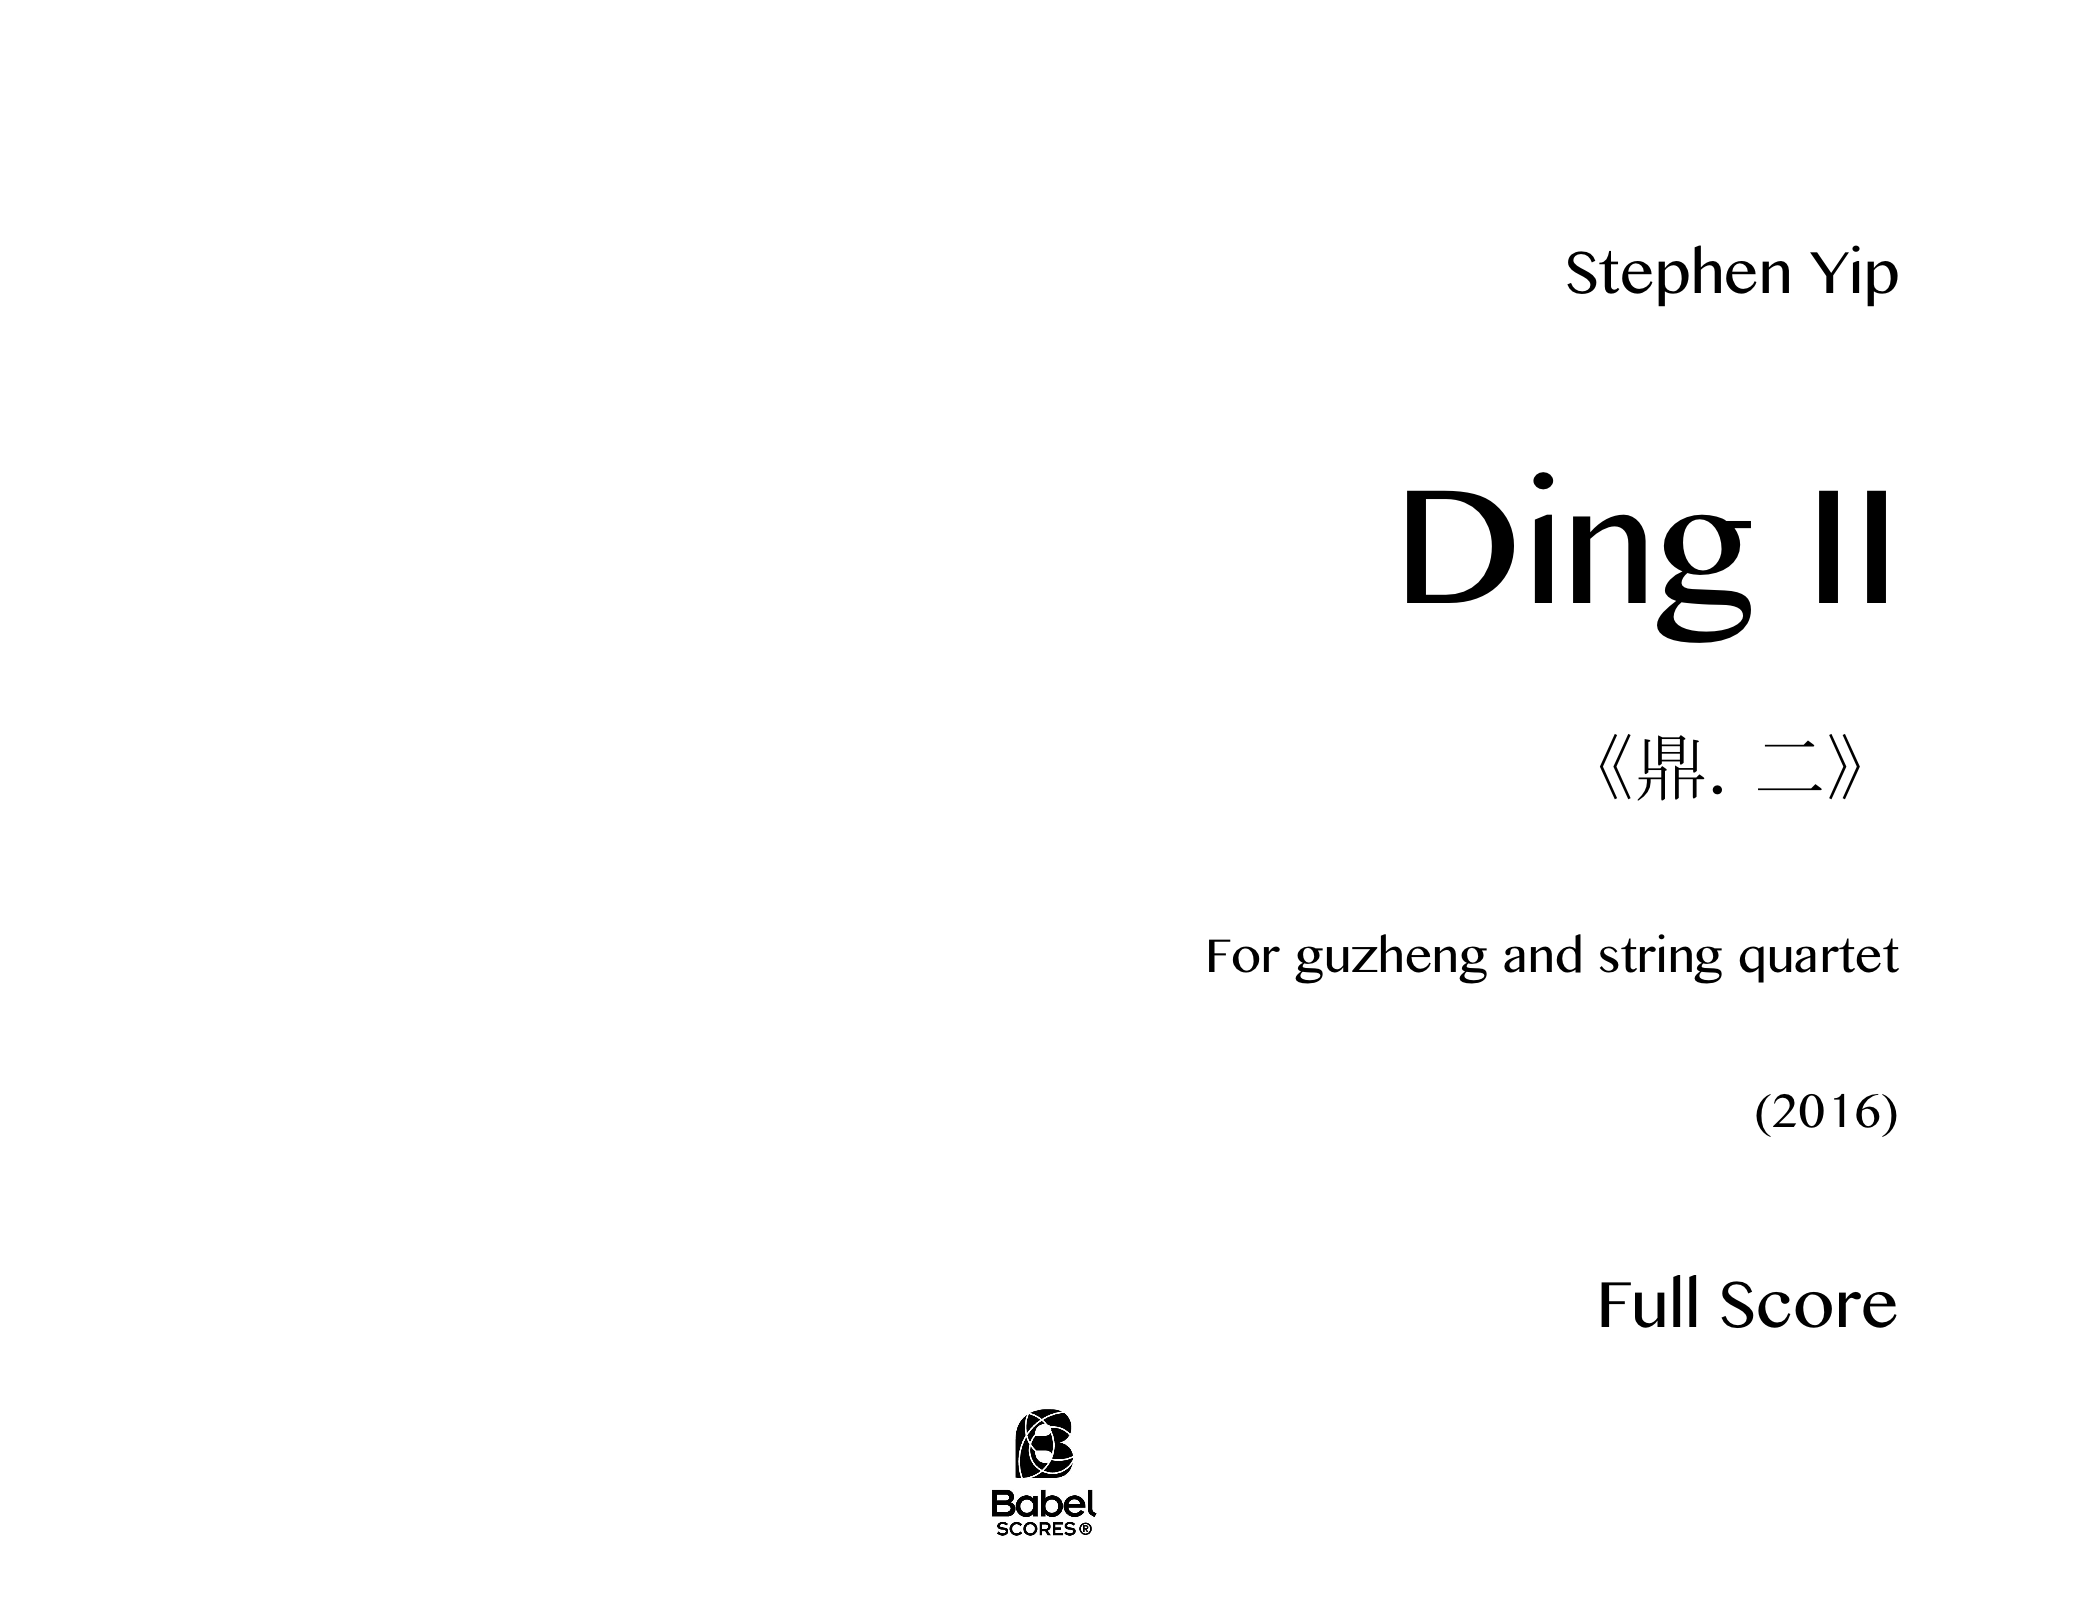 Ding II Carta z 3 1 157